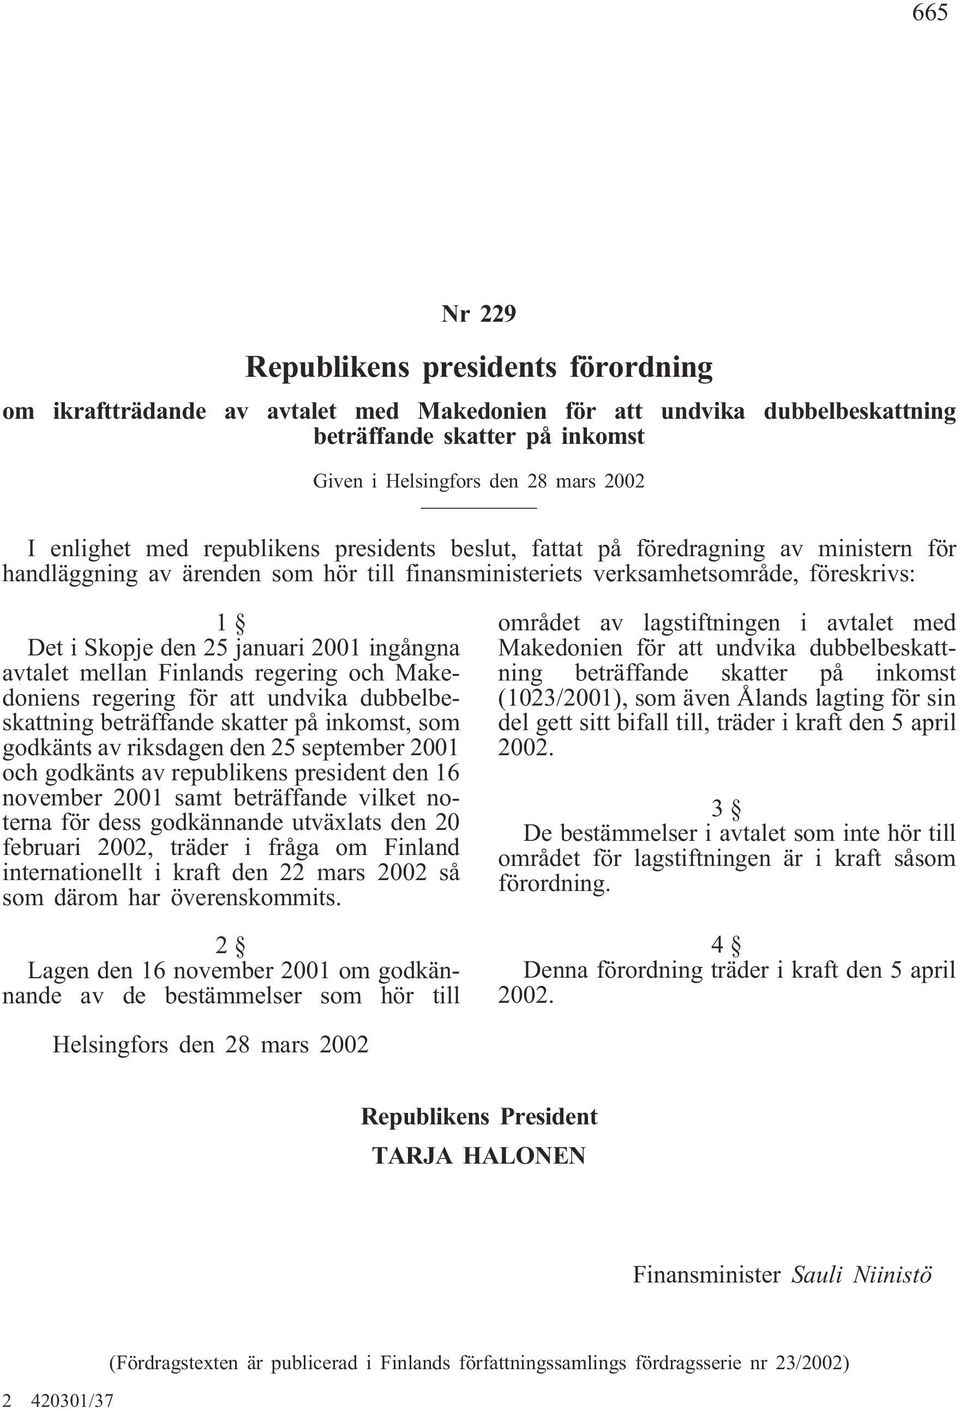 januari 2001 ingångna avtalet mellan Finlands regering och Makedoniens regering för att undvika dubbelbeskattning beträffande skatter på inkomst, som godkänts av riksdagen den 25 september 2001 och